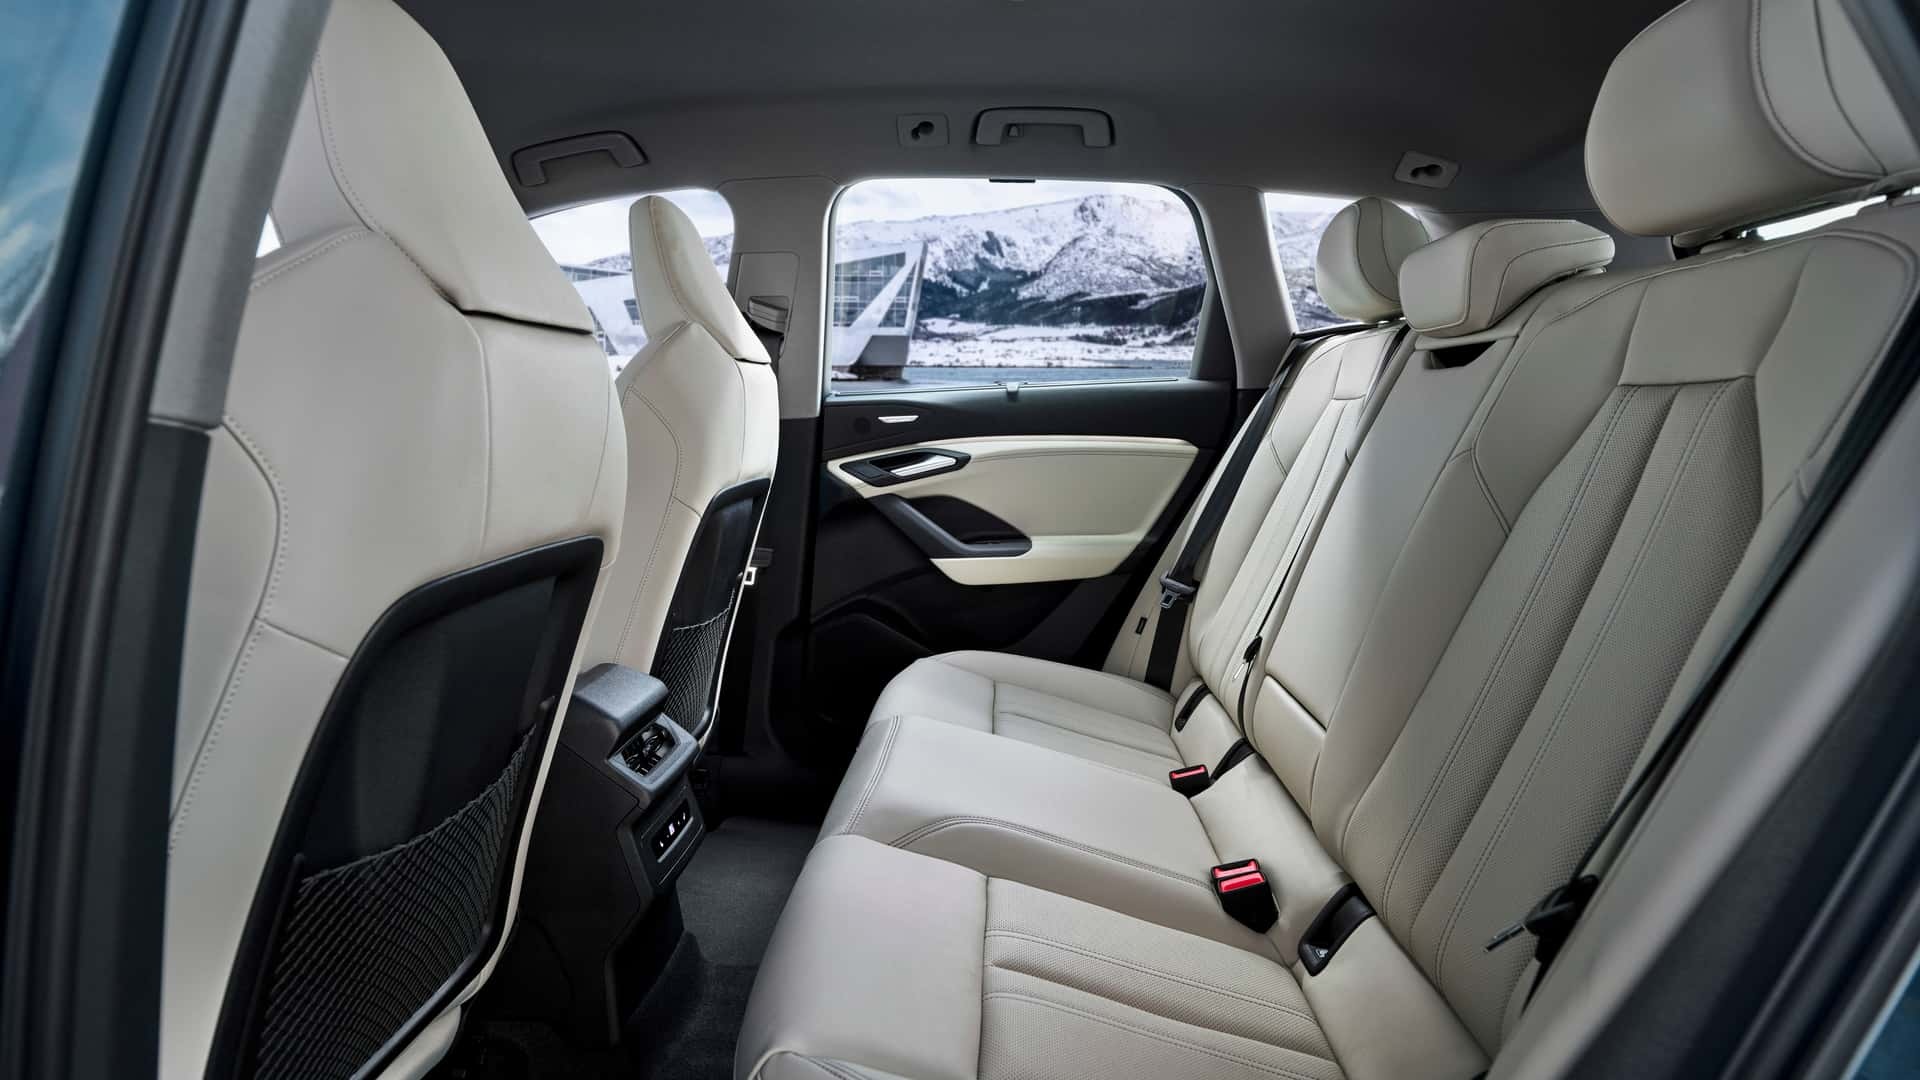 View - Audi Q6 E-Tron 2025 ra mắt cùng bản tính năng vận hành cao SQ6 E-Tron | Báo Dân trí